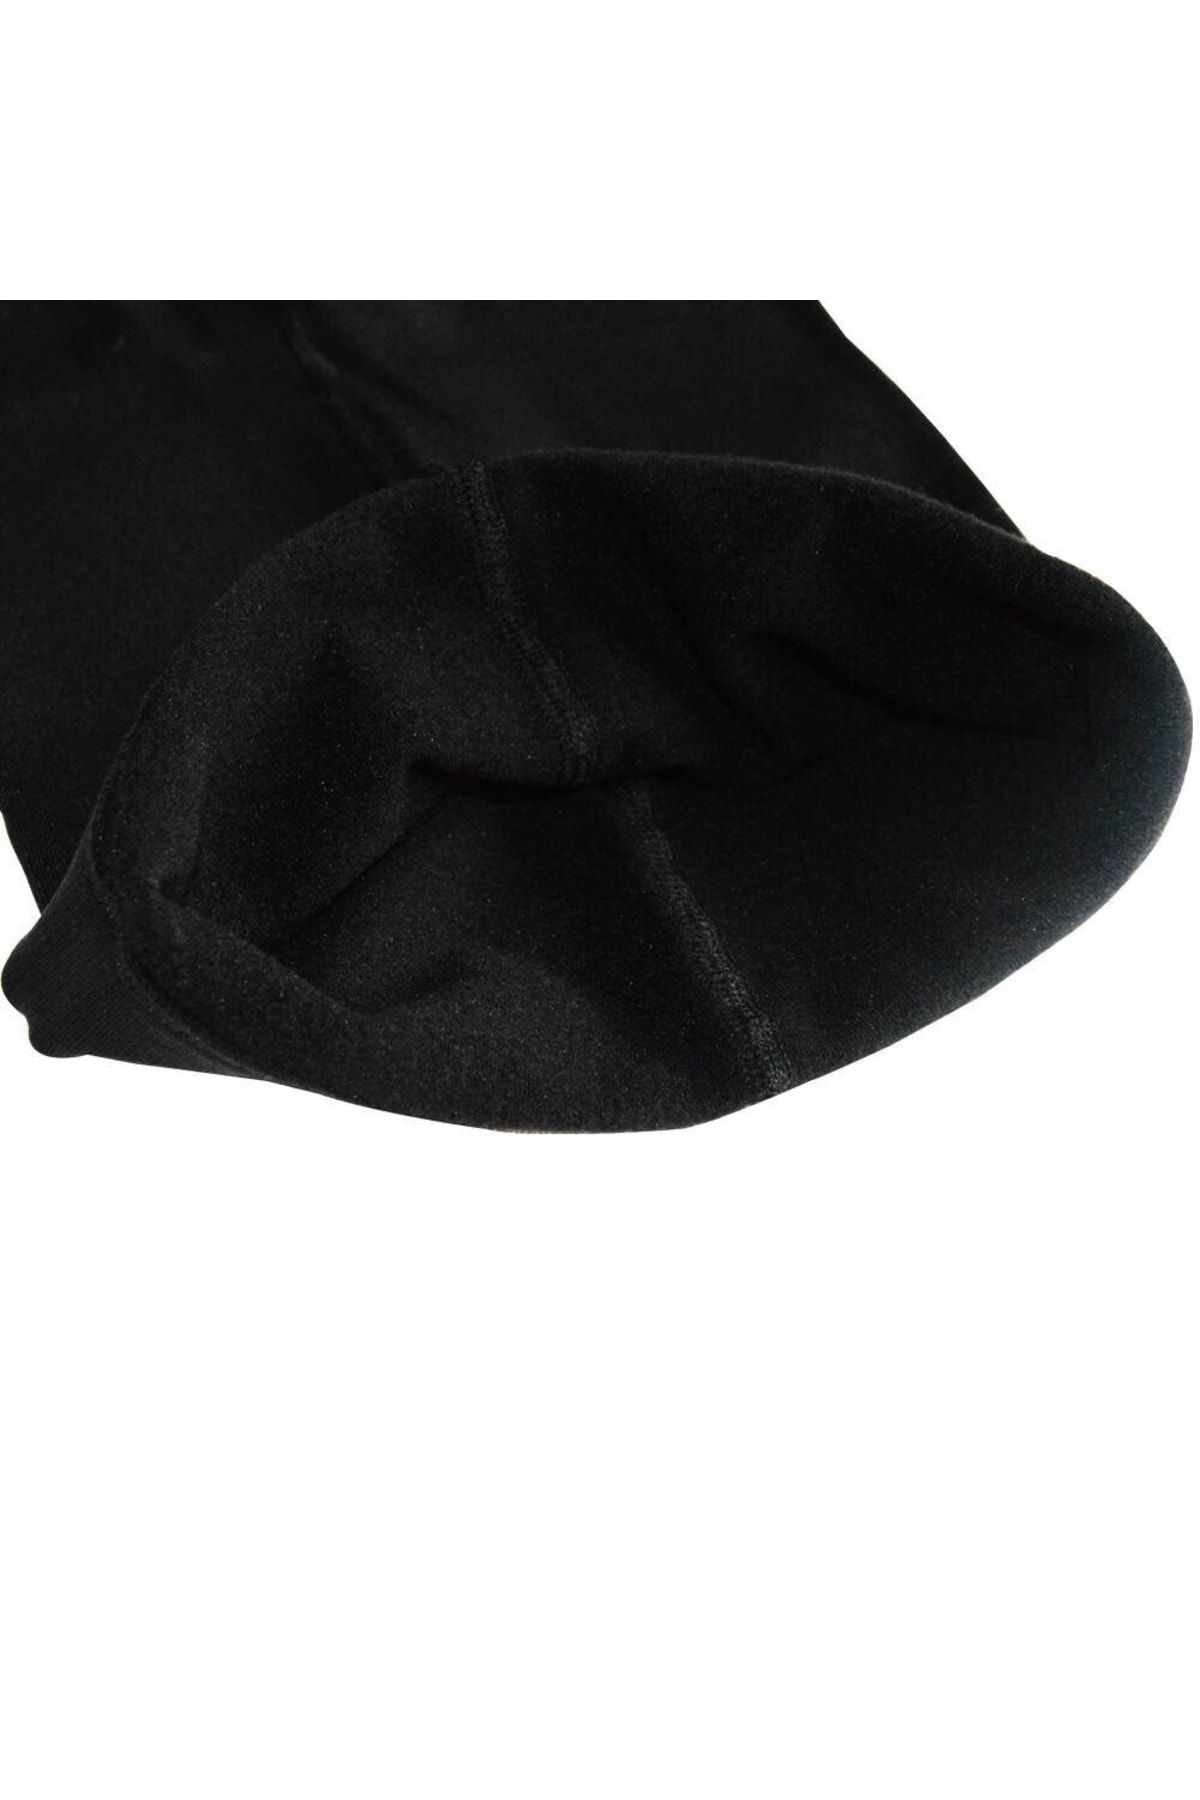 İpek Class 200 Den  Termal Külotlu Çorap Siyah 2 Adet Siyah